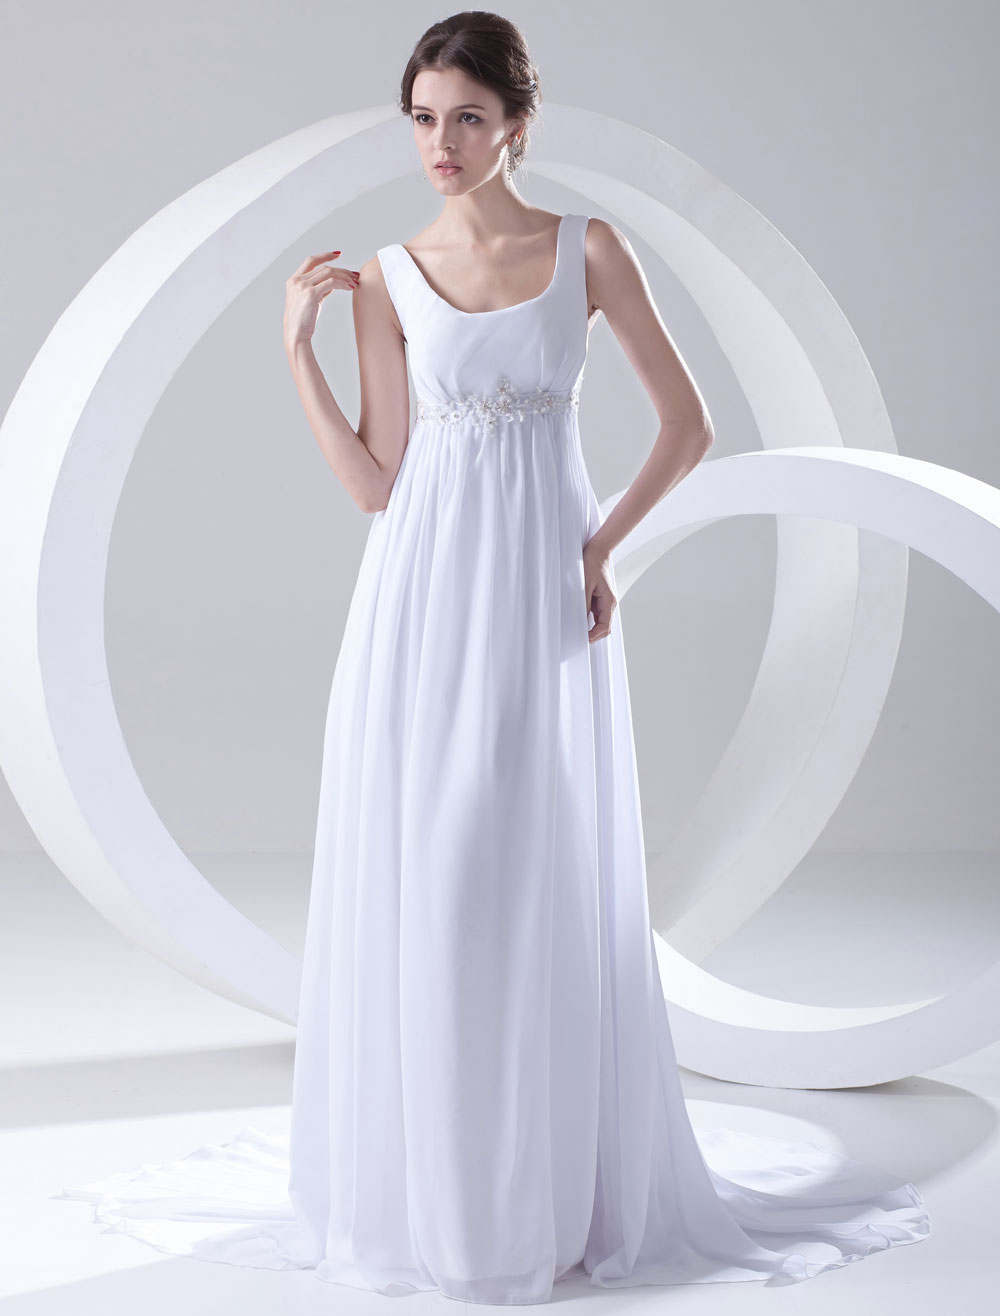 Empire stílusú menyasszonyi ruha,nem csak fehér színben (A Ft ár tájékoztató jellegű)